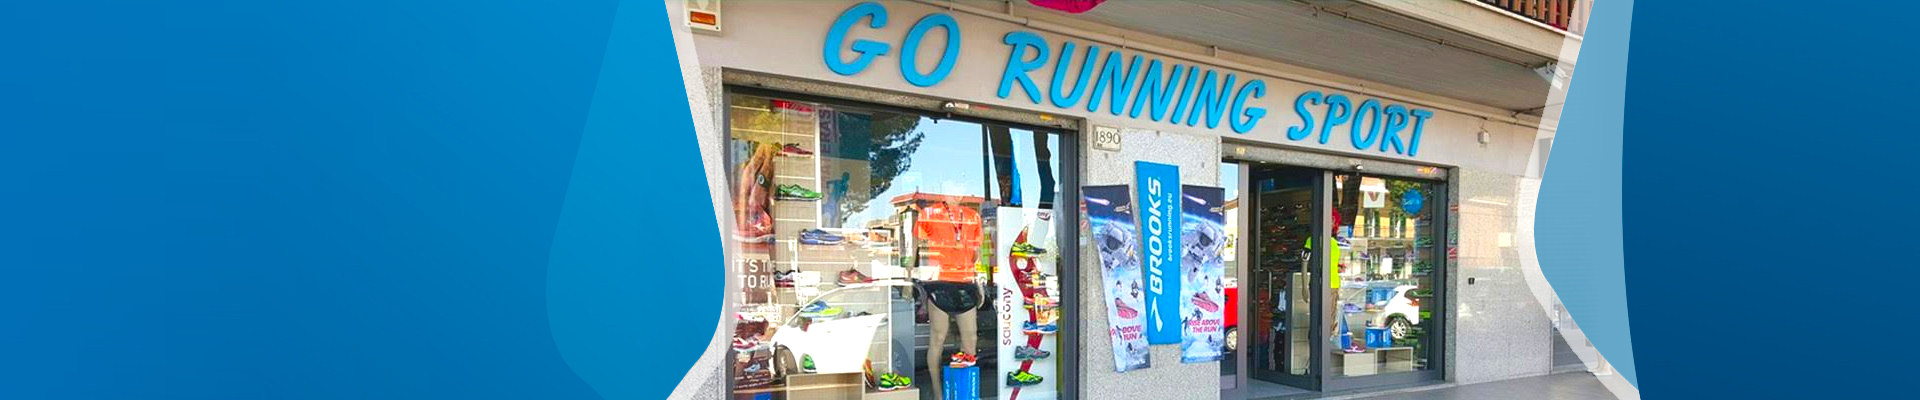 negozio specializzato running